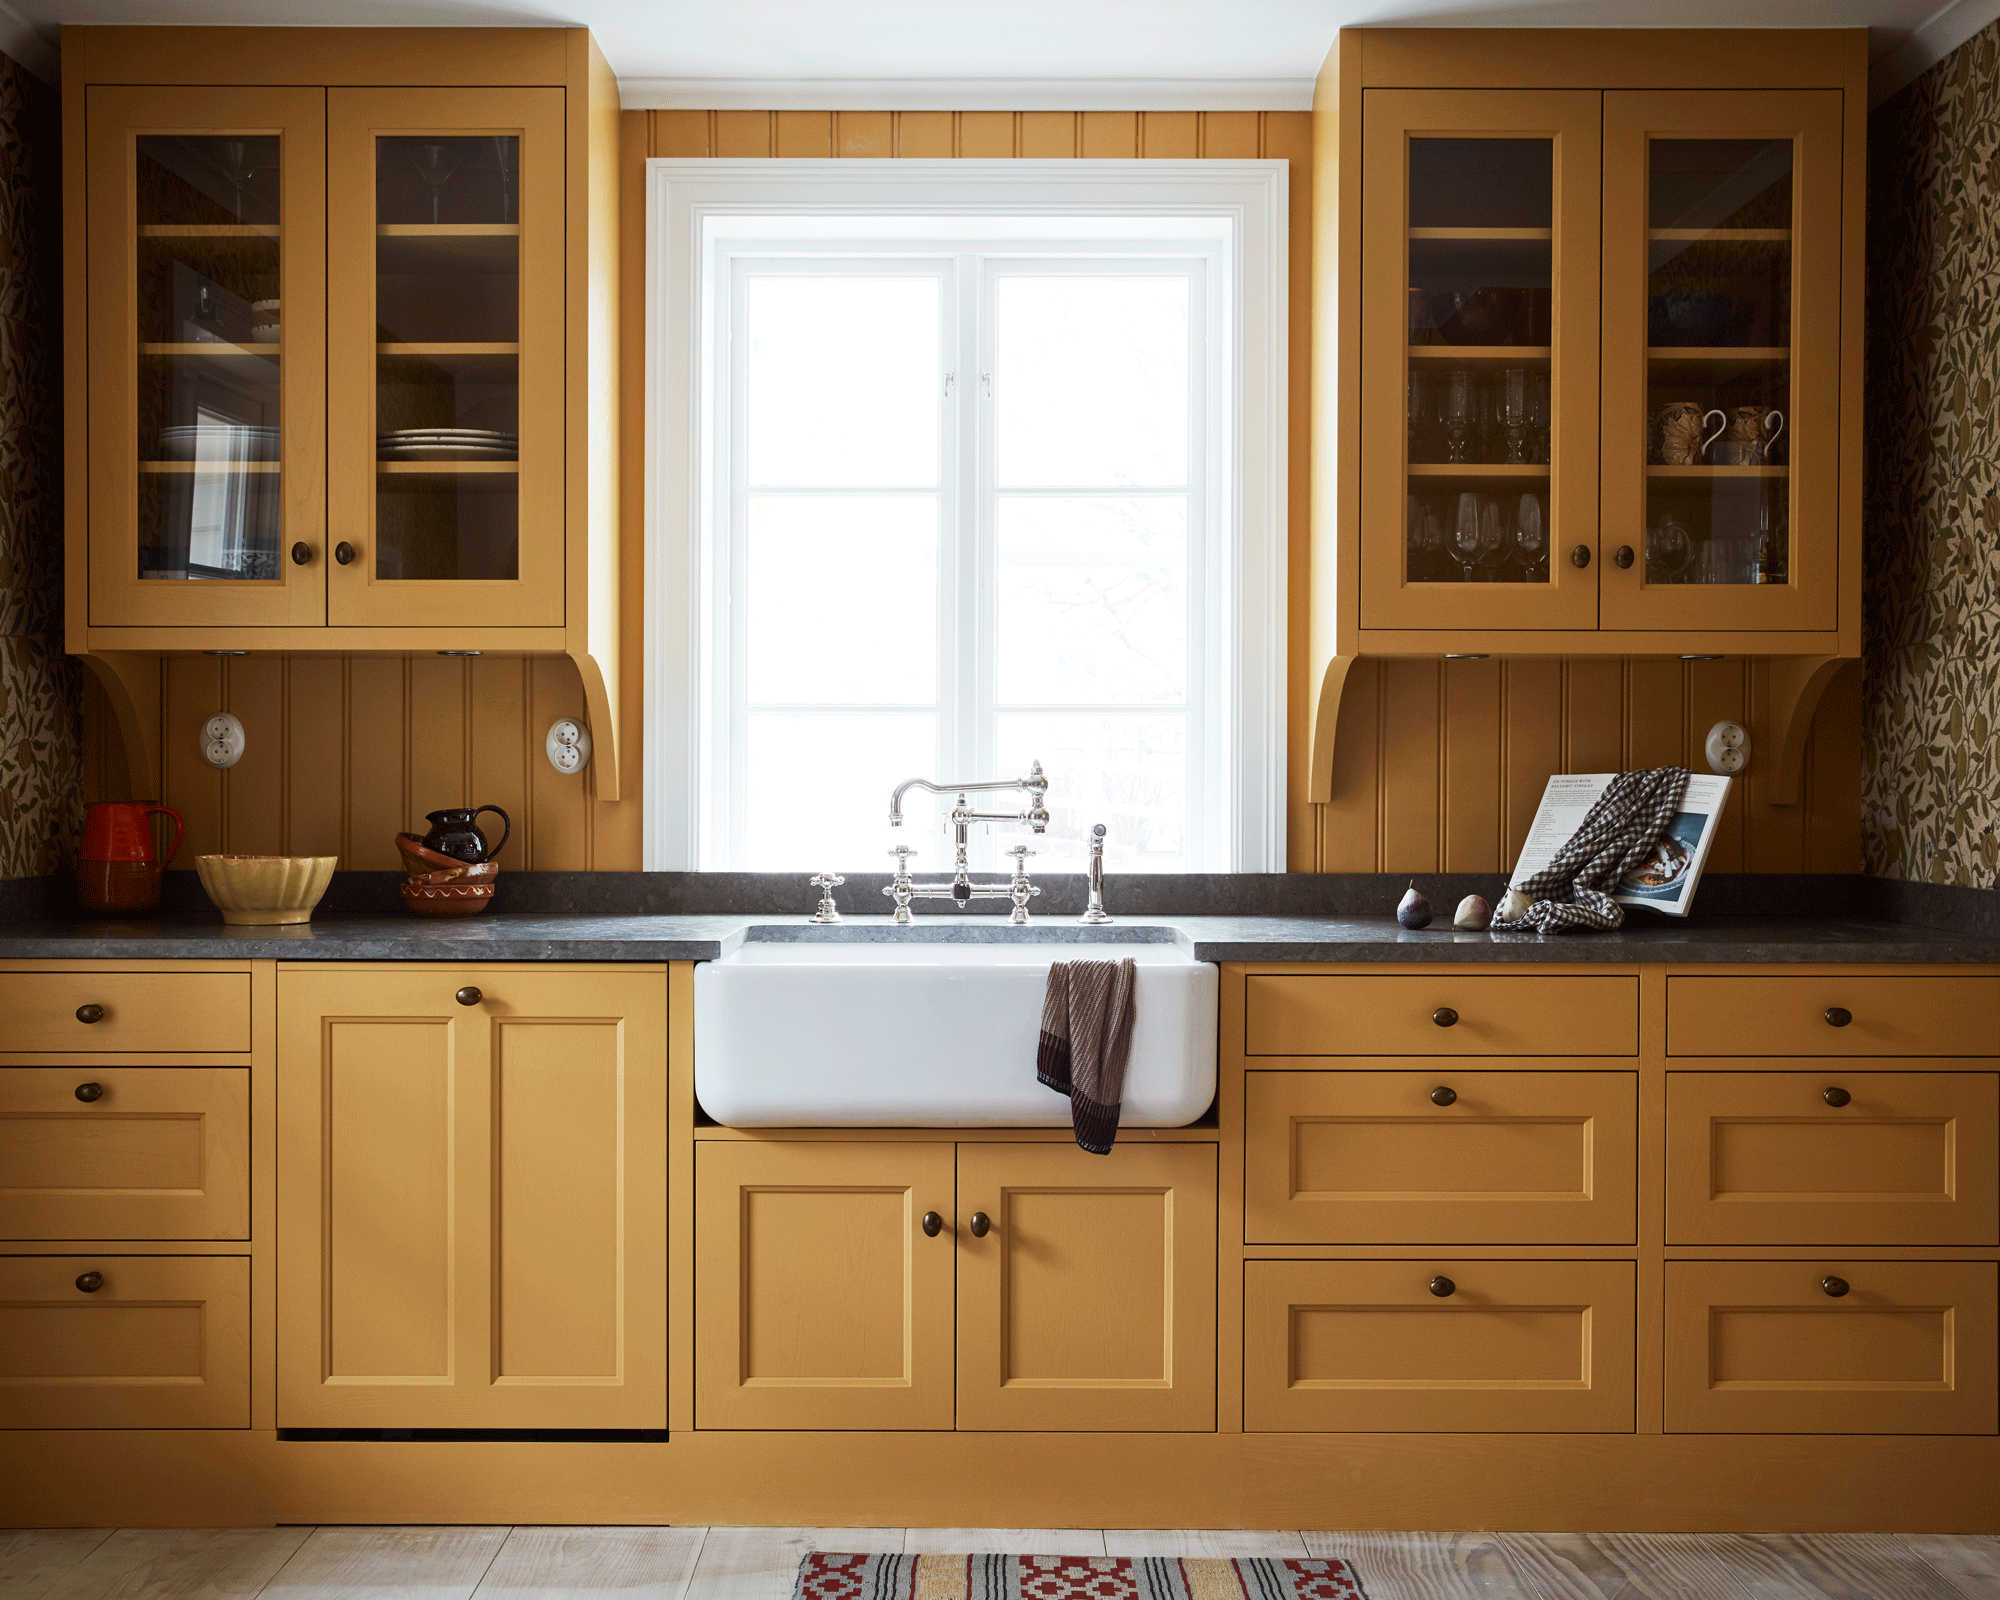 Organizing kitchen cabinets: 4 tricks to arrange essentials